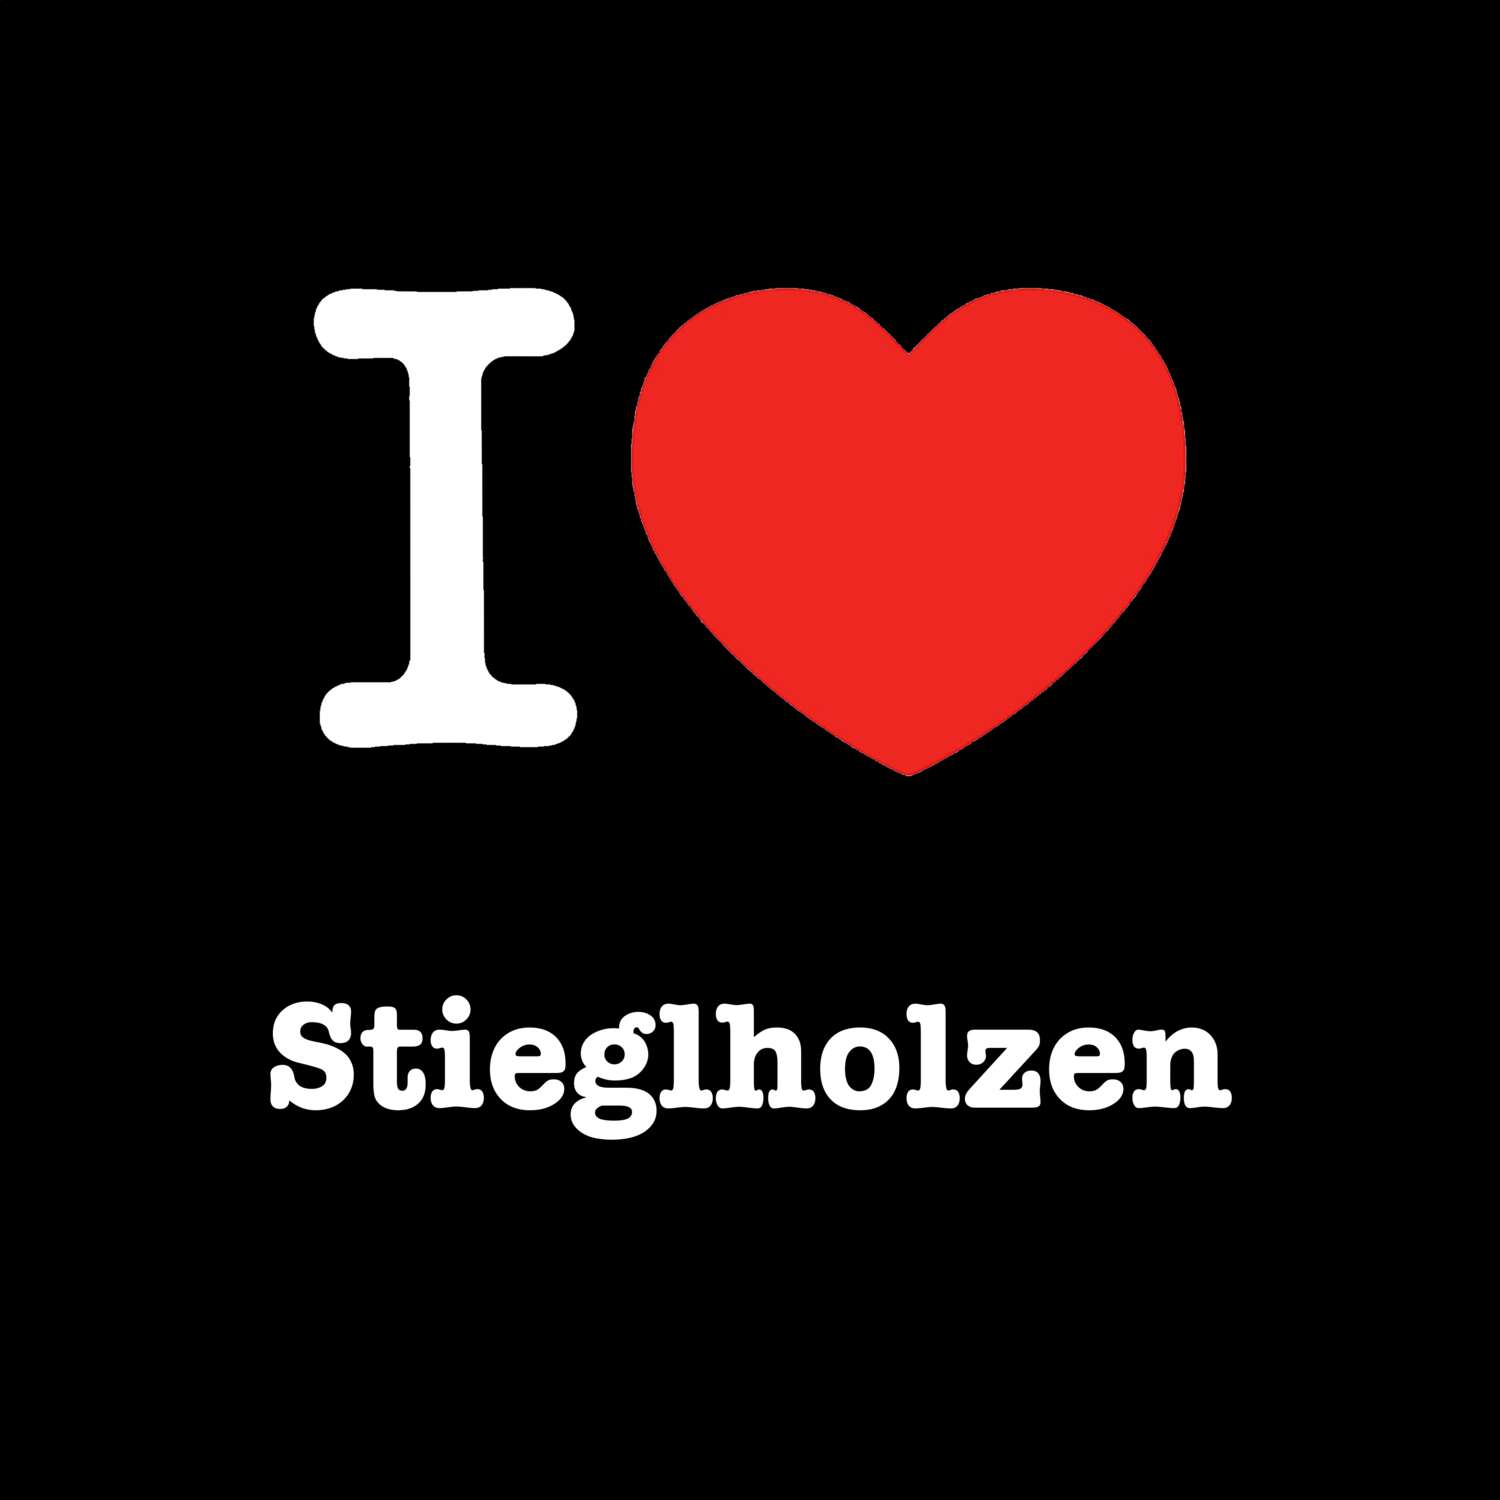 Stieglholzen T-Shirt »I love«